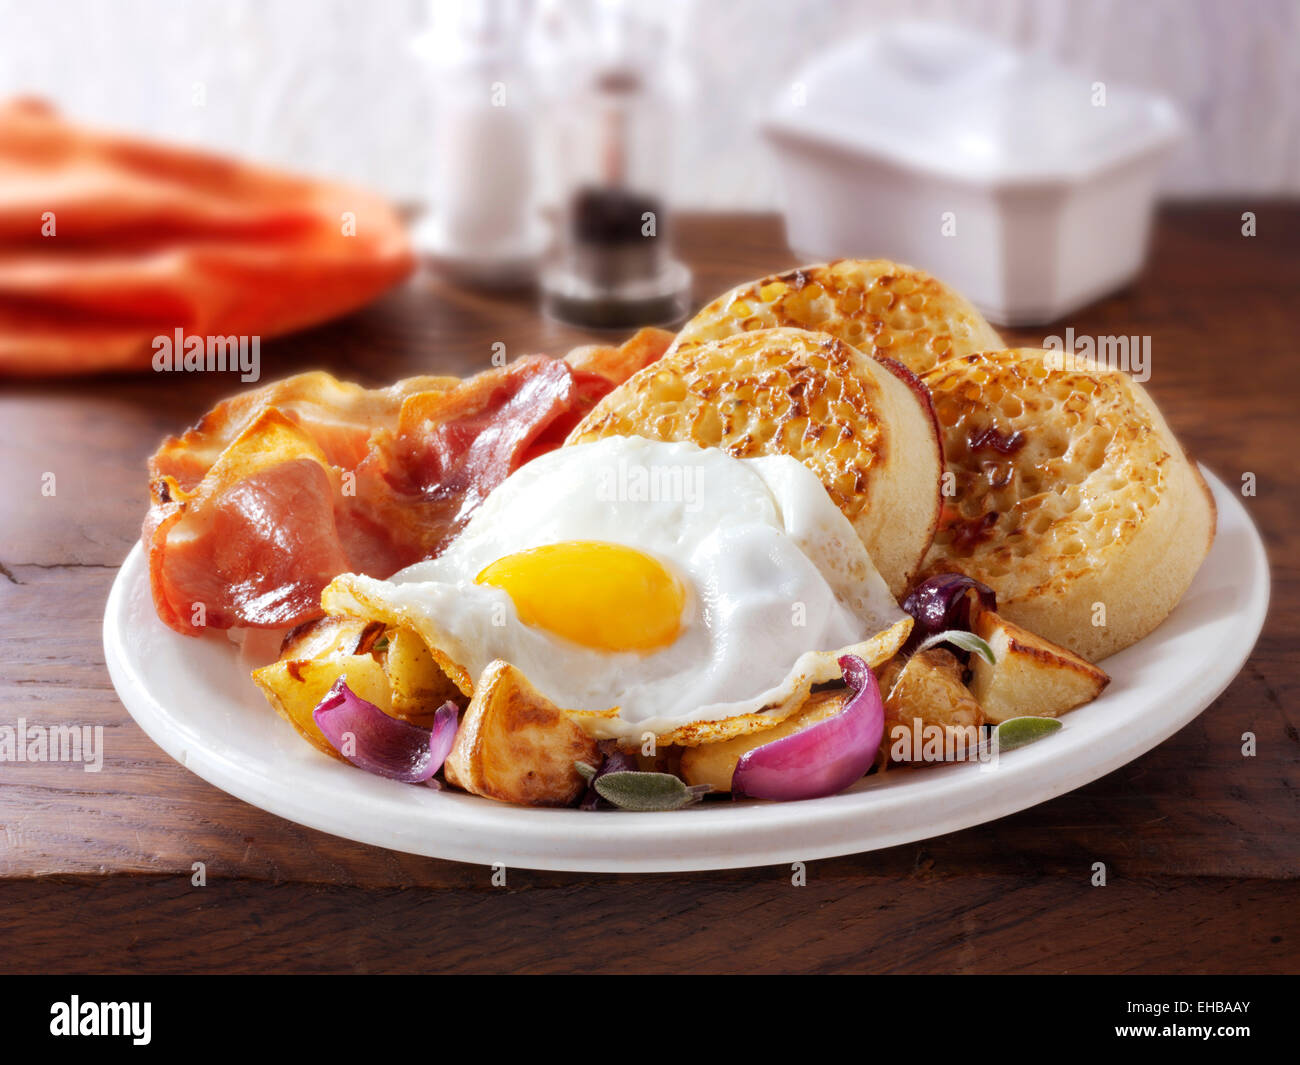 La completa prima colazione inglese con cialdine, servita su una piastra bianca in una tabella - uova fritte, pancetta, sauté di patate e cialdine Foto Stock